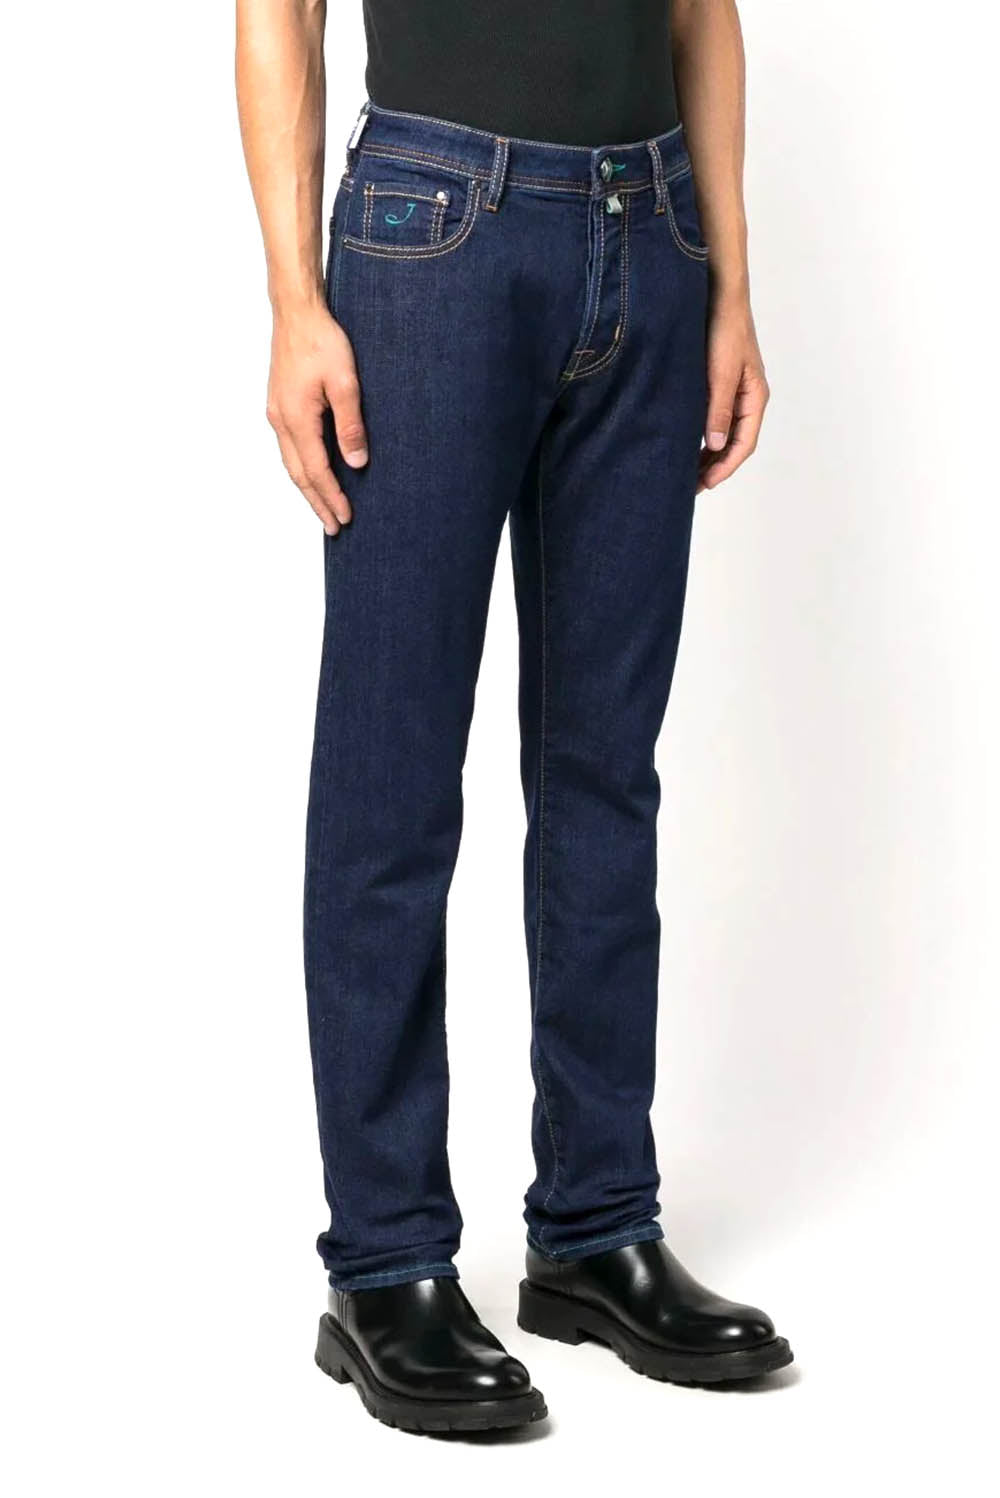  Jacob Cohen Jeans Slim Con Applicazione 561d Uomo - 2